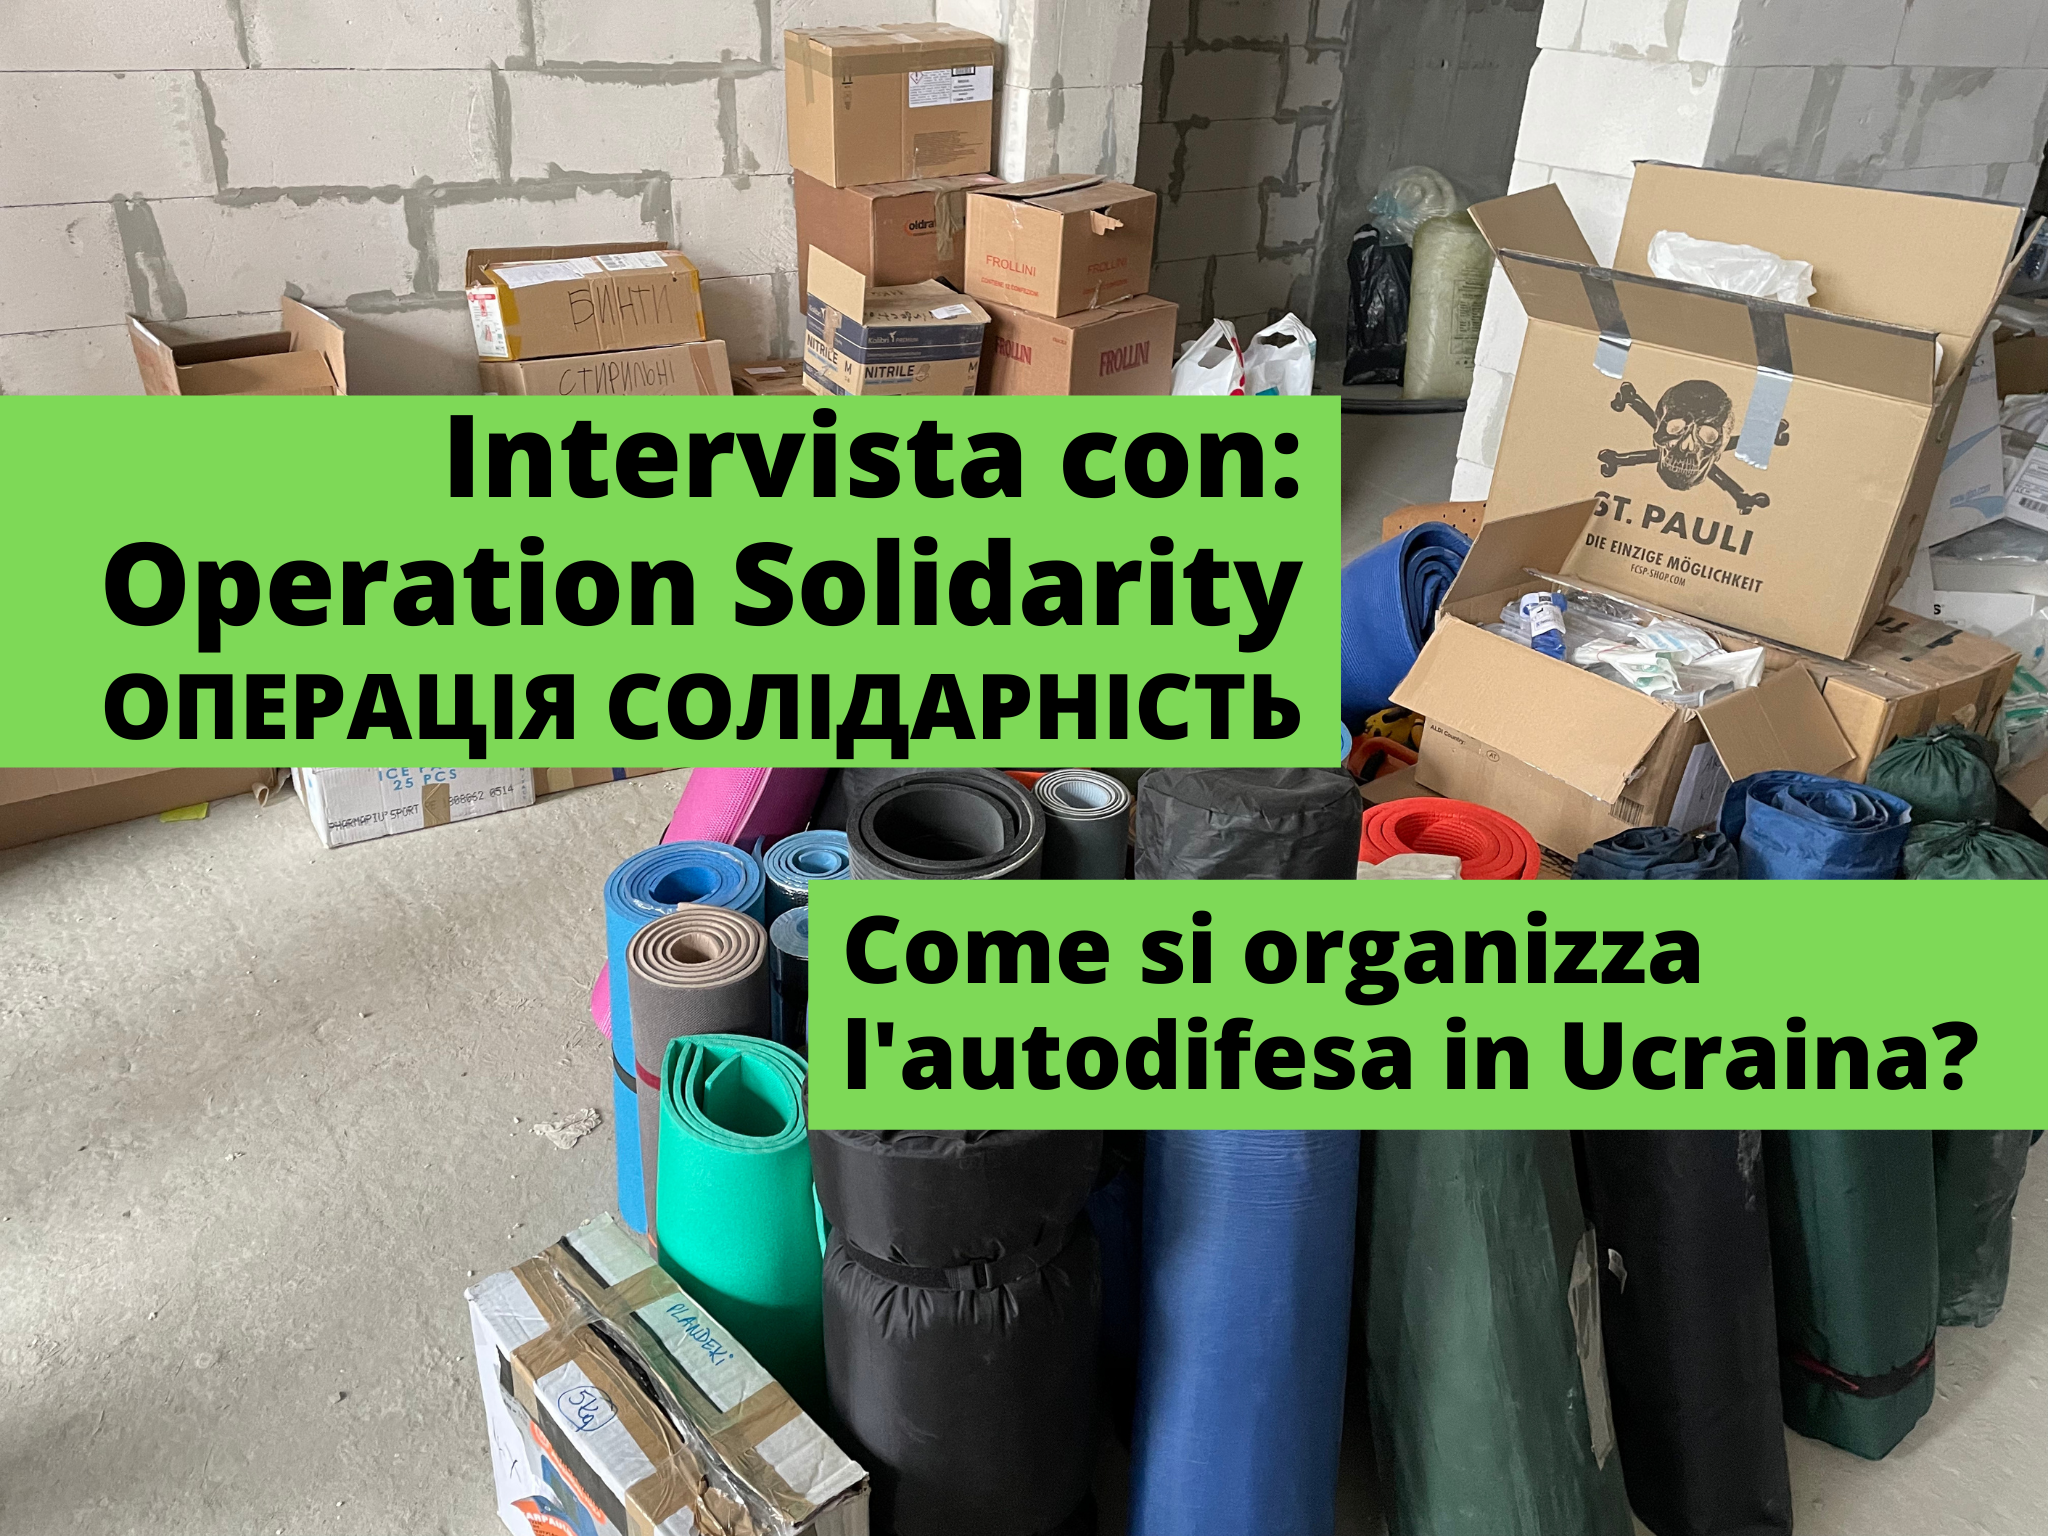 Al momento stai visualizzando Operation Solidarity: come si organizza l’autodifesa in Ucraina?